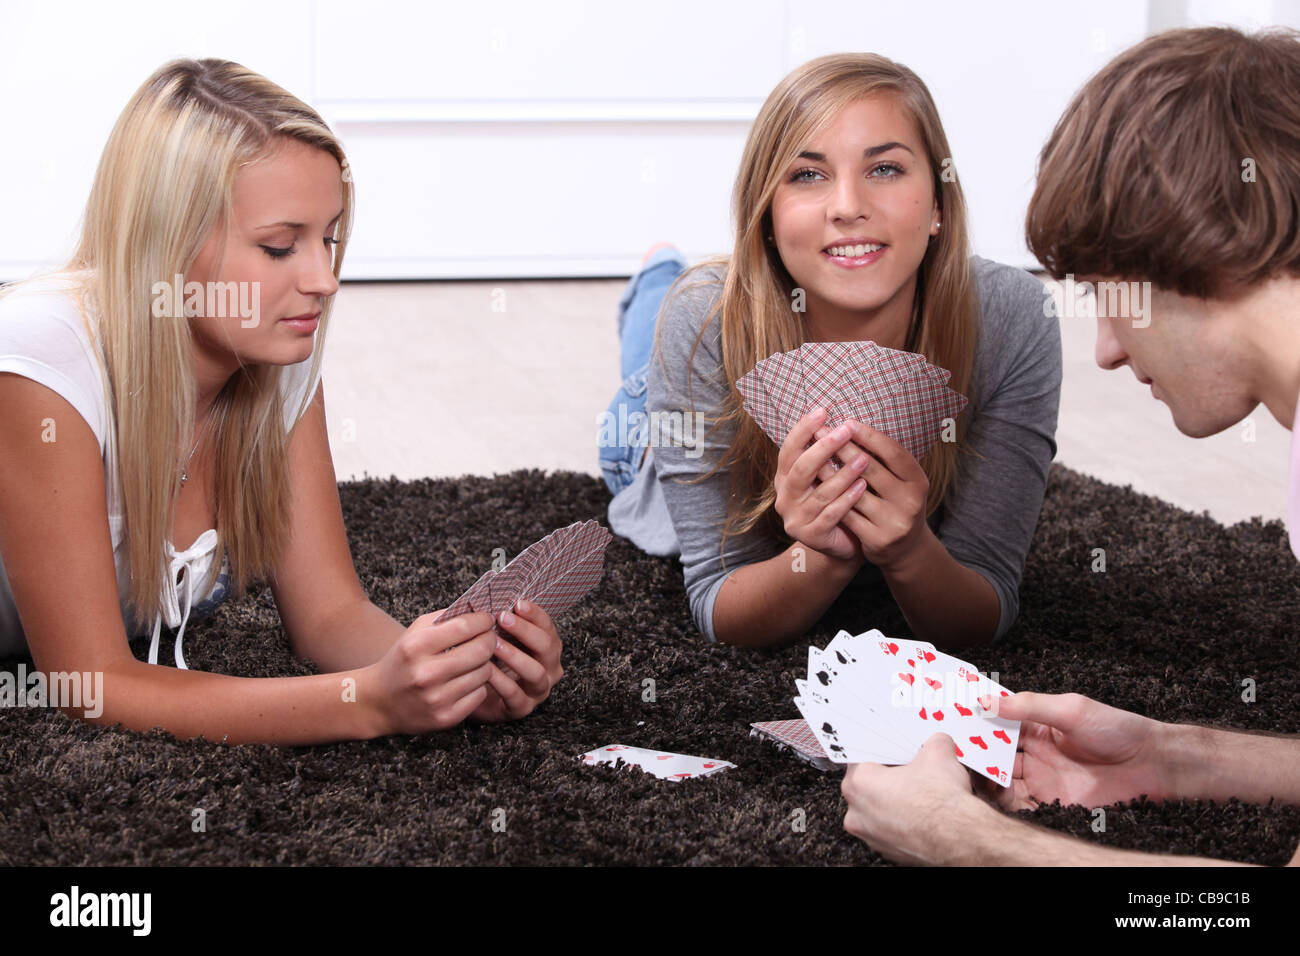 Играем с сестрой в карты на раздевание. Мальчик и девочка играют в карты. Девочки играют в карты. Девочки играют в карты на раздевание. Девушки играющие в карты.